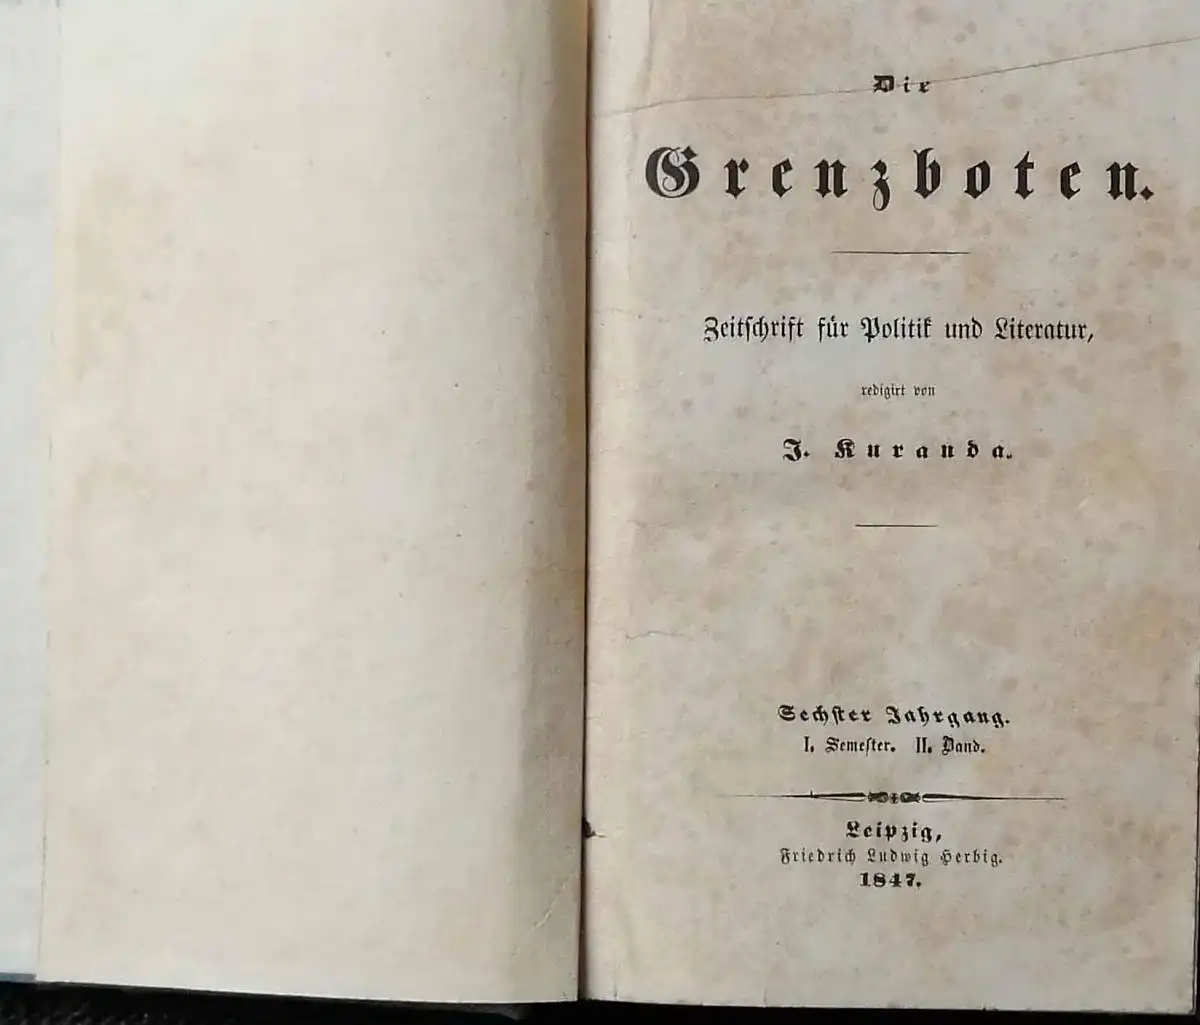 Kuranda, J. (Hrg.): Die Grenzboten - Sechster Jahrgang 1847-- I. Semester  II. Bd. - Zeitschrift für Politik und Literatur. 